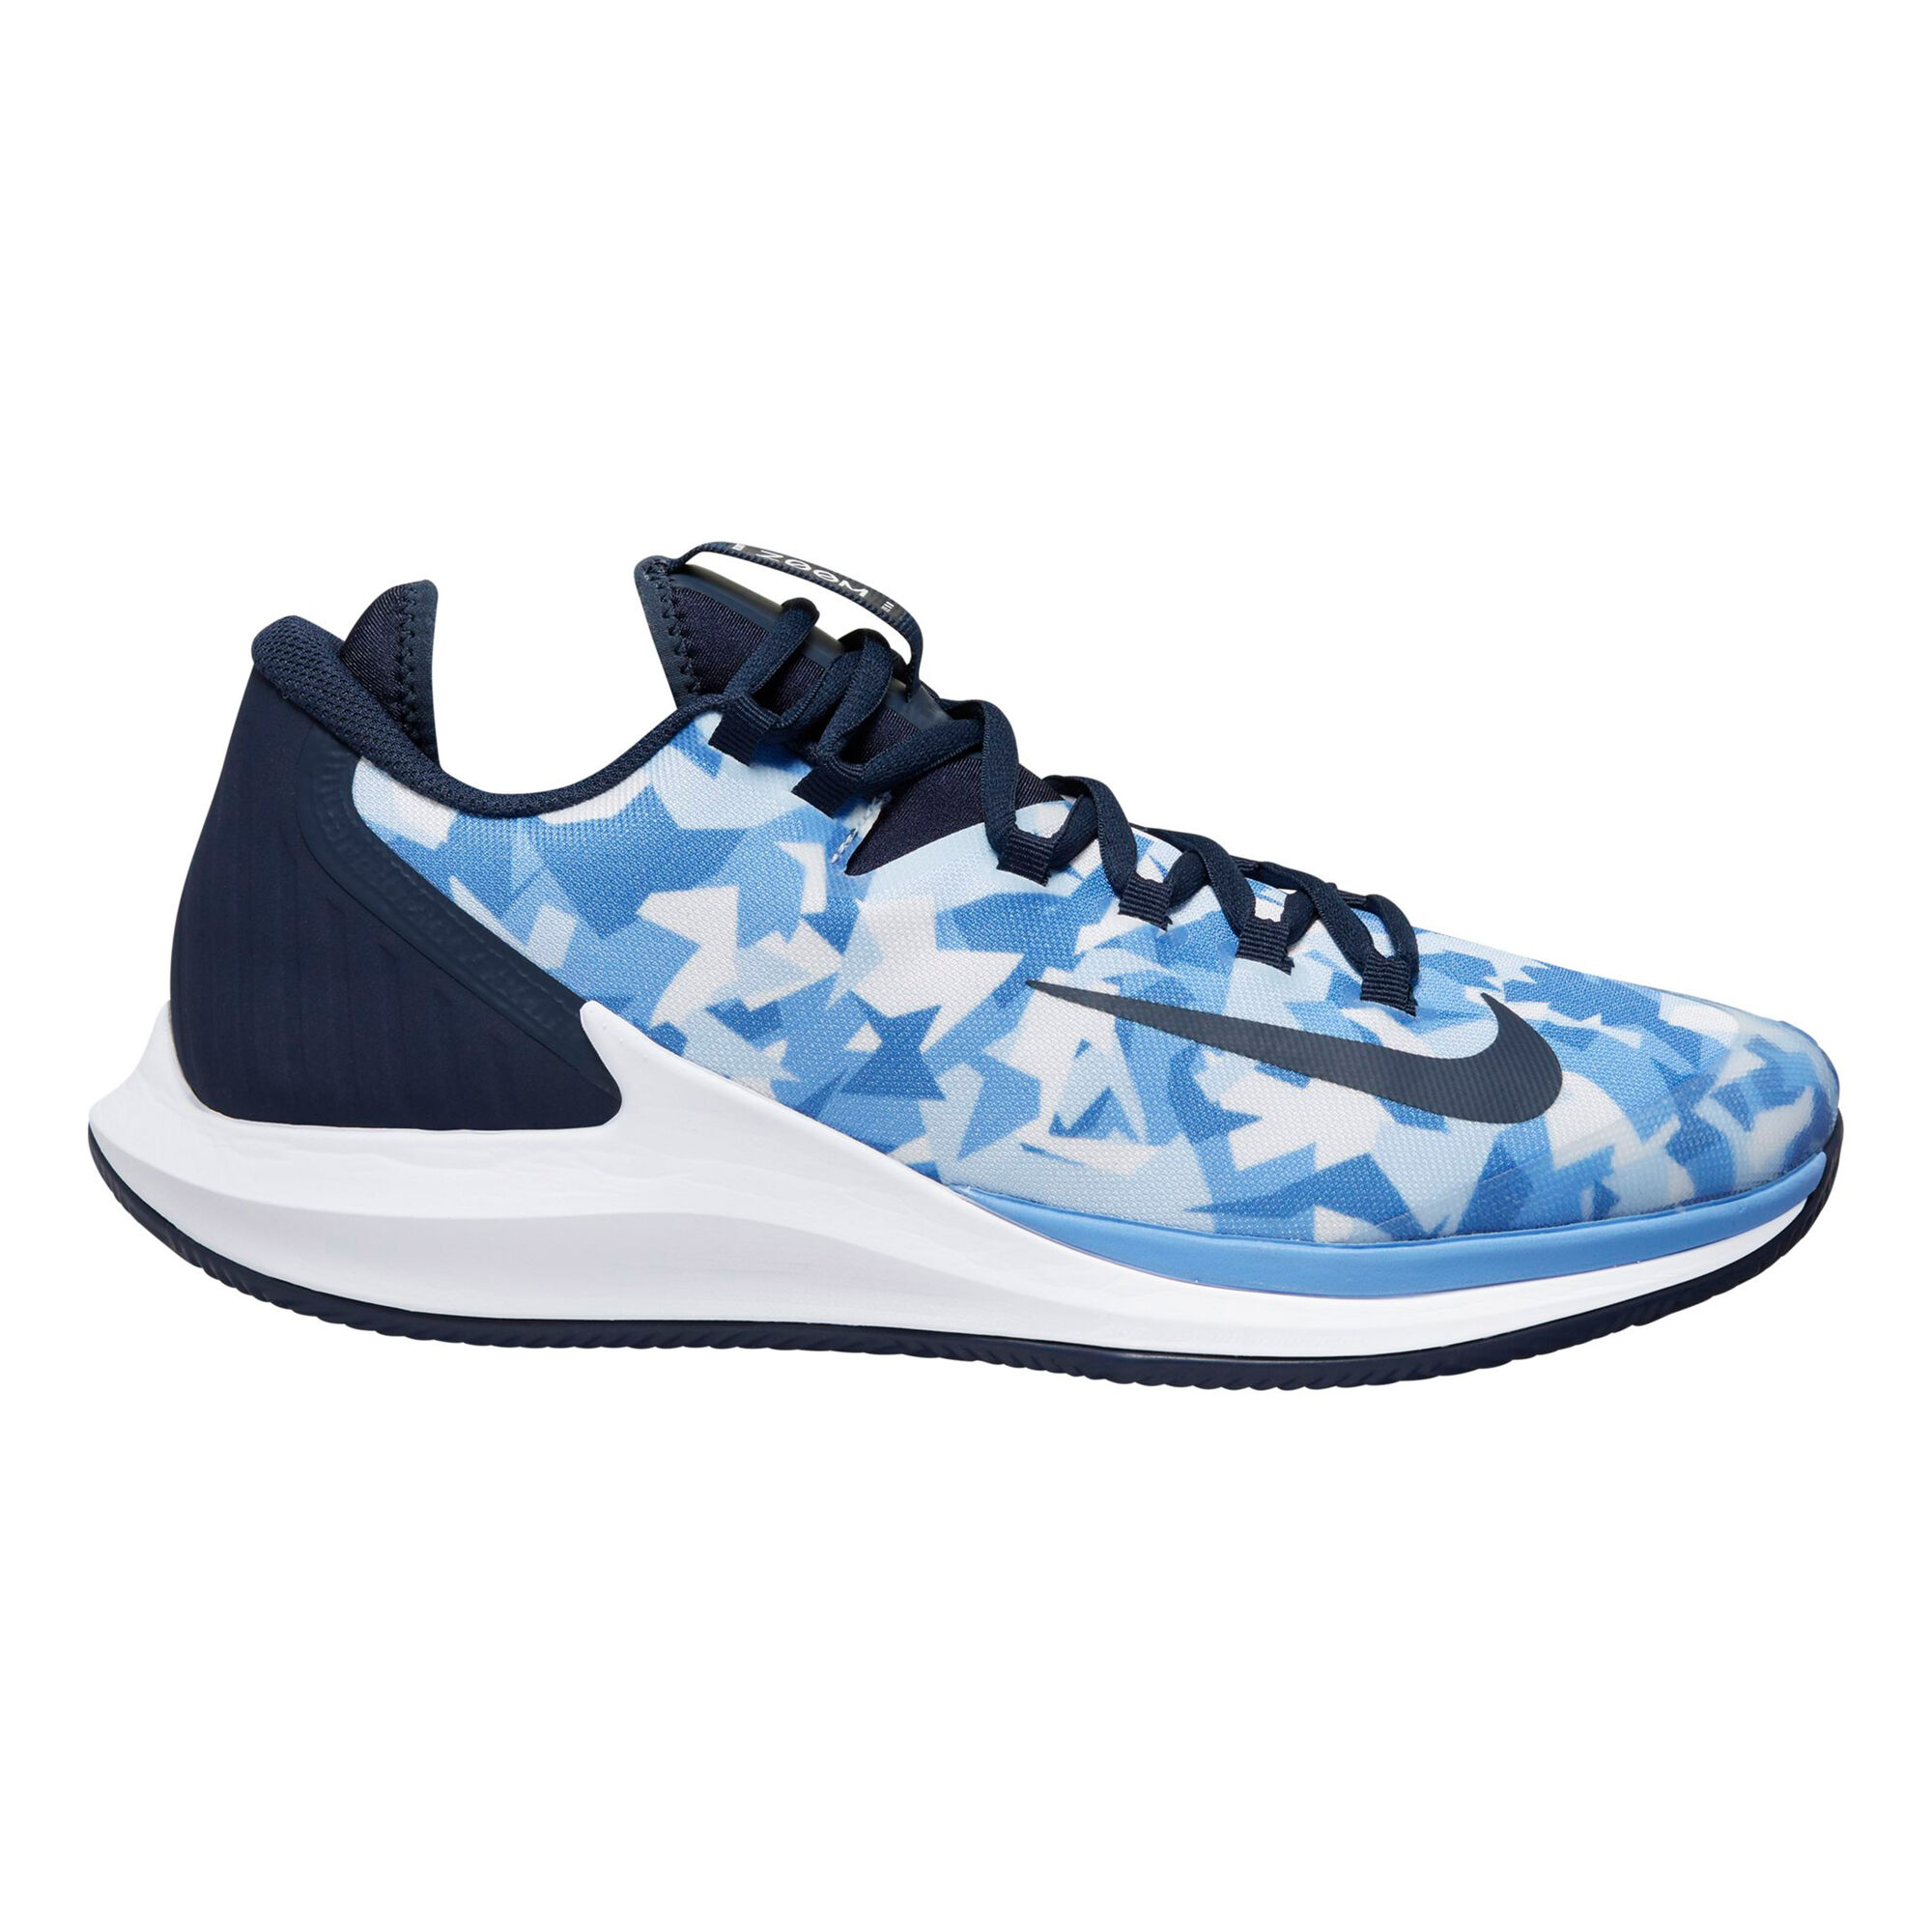 Nike Air Zoom Zero Clay Court Shoe Men - Light Blue, Dark | Tennis-Point